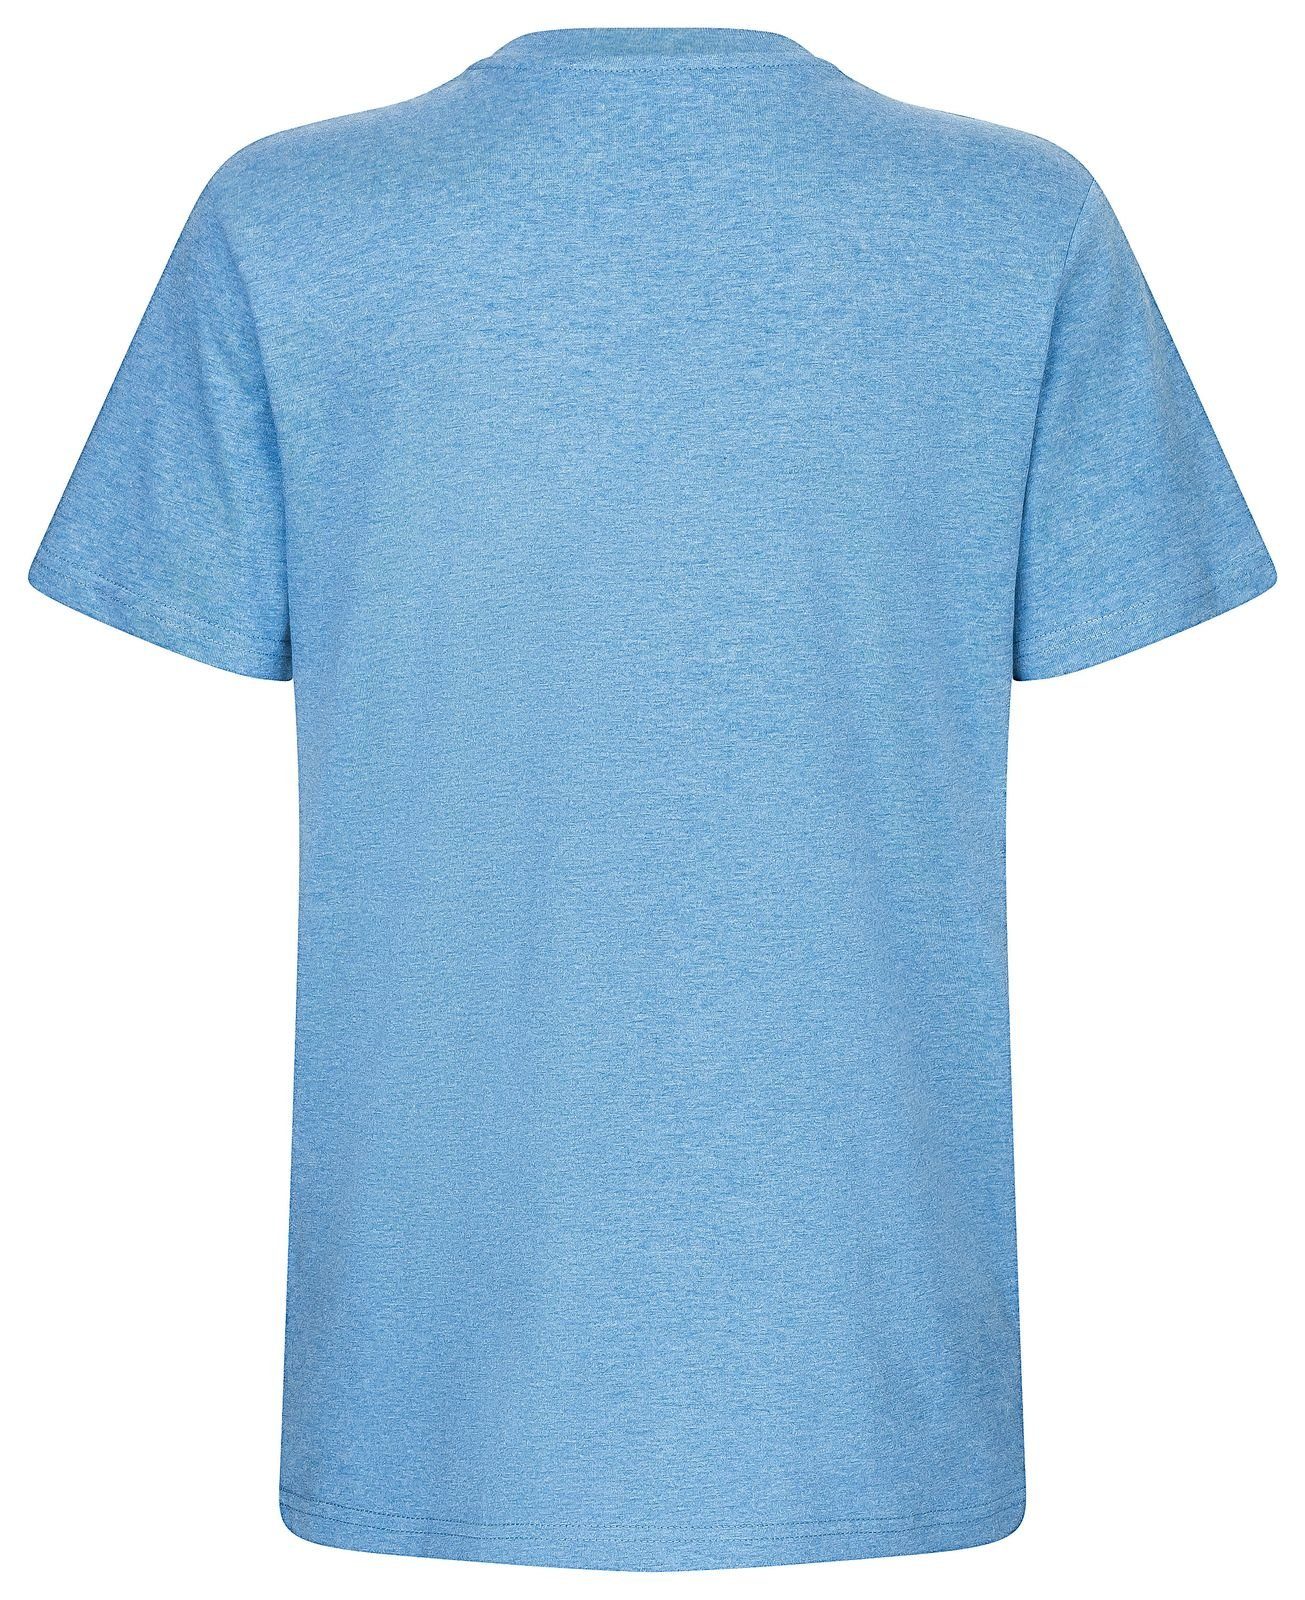 Gradnetz T-Shirt basic leather blau fair & meliert unisex nachhaltig 100% Biobaumwolle